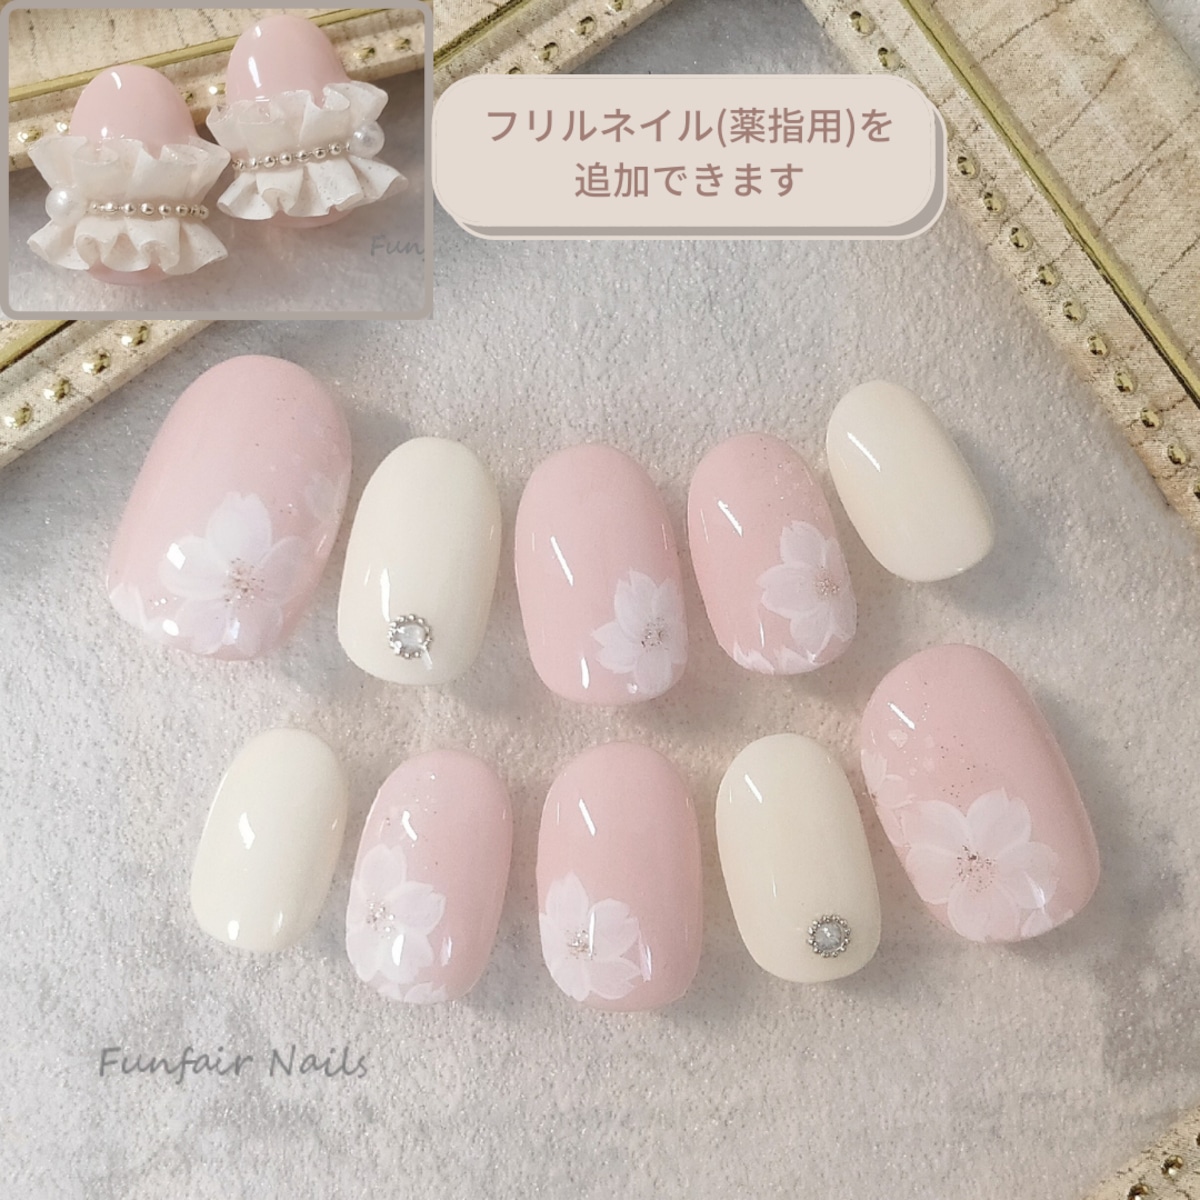 Little Flower Garden(さくら) 〜 ネイルチップ 桜 フラワー ピンク